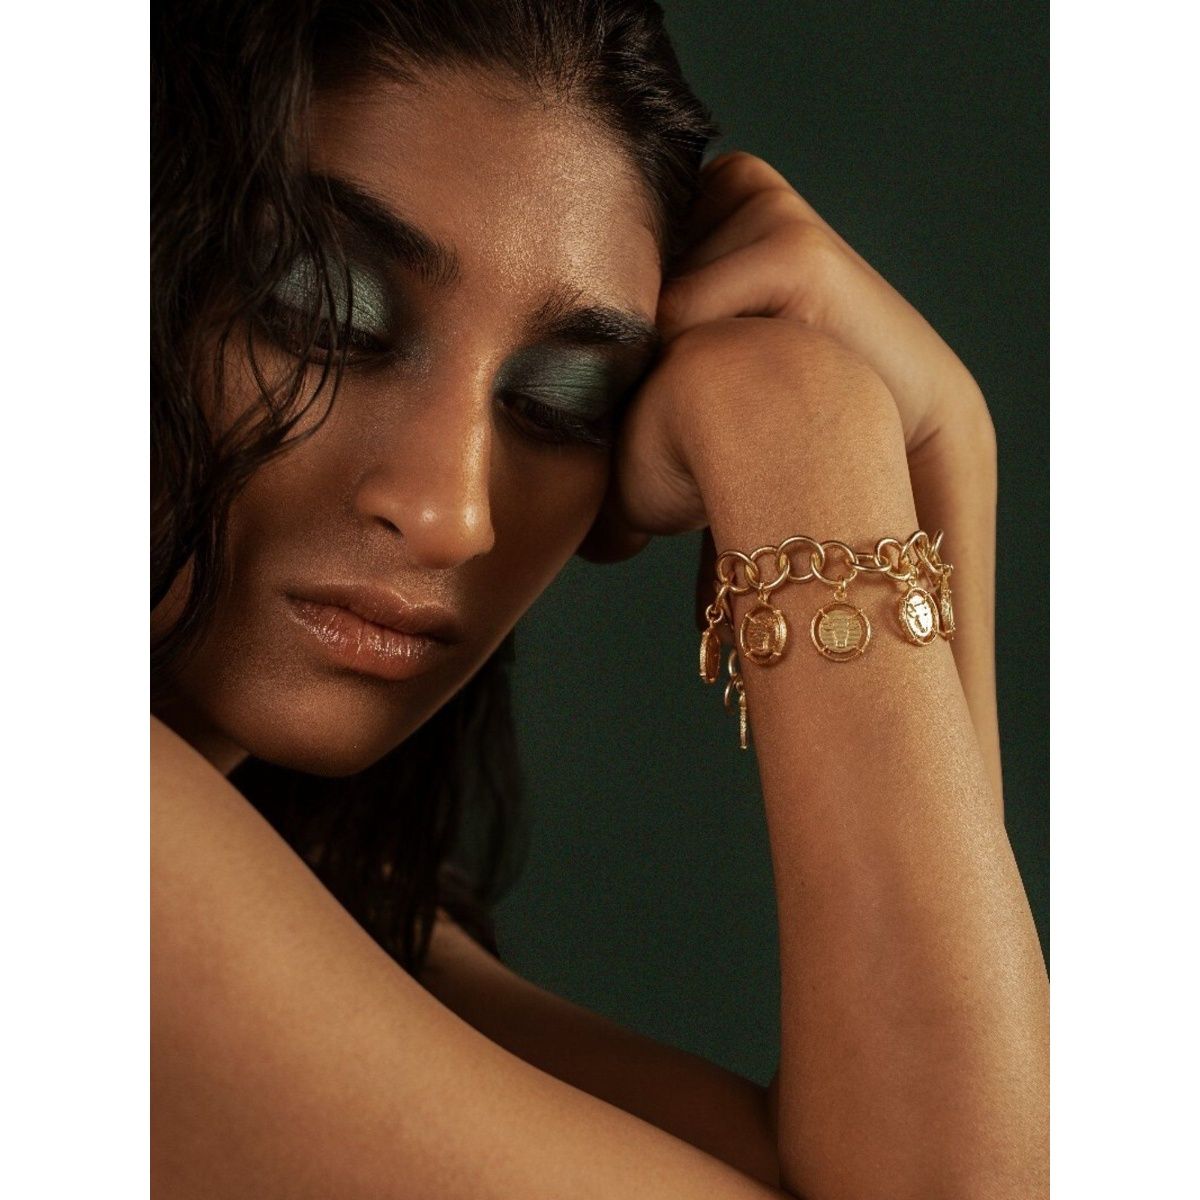 Buy GoldToned Bracelets  Bangles for Women by TRINK Online  Ajiocom